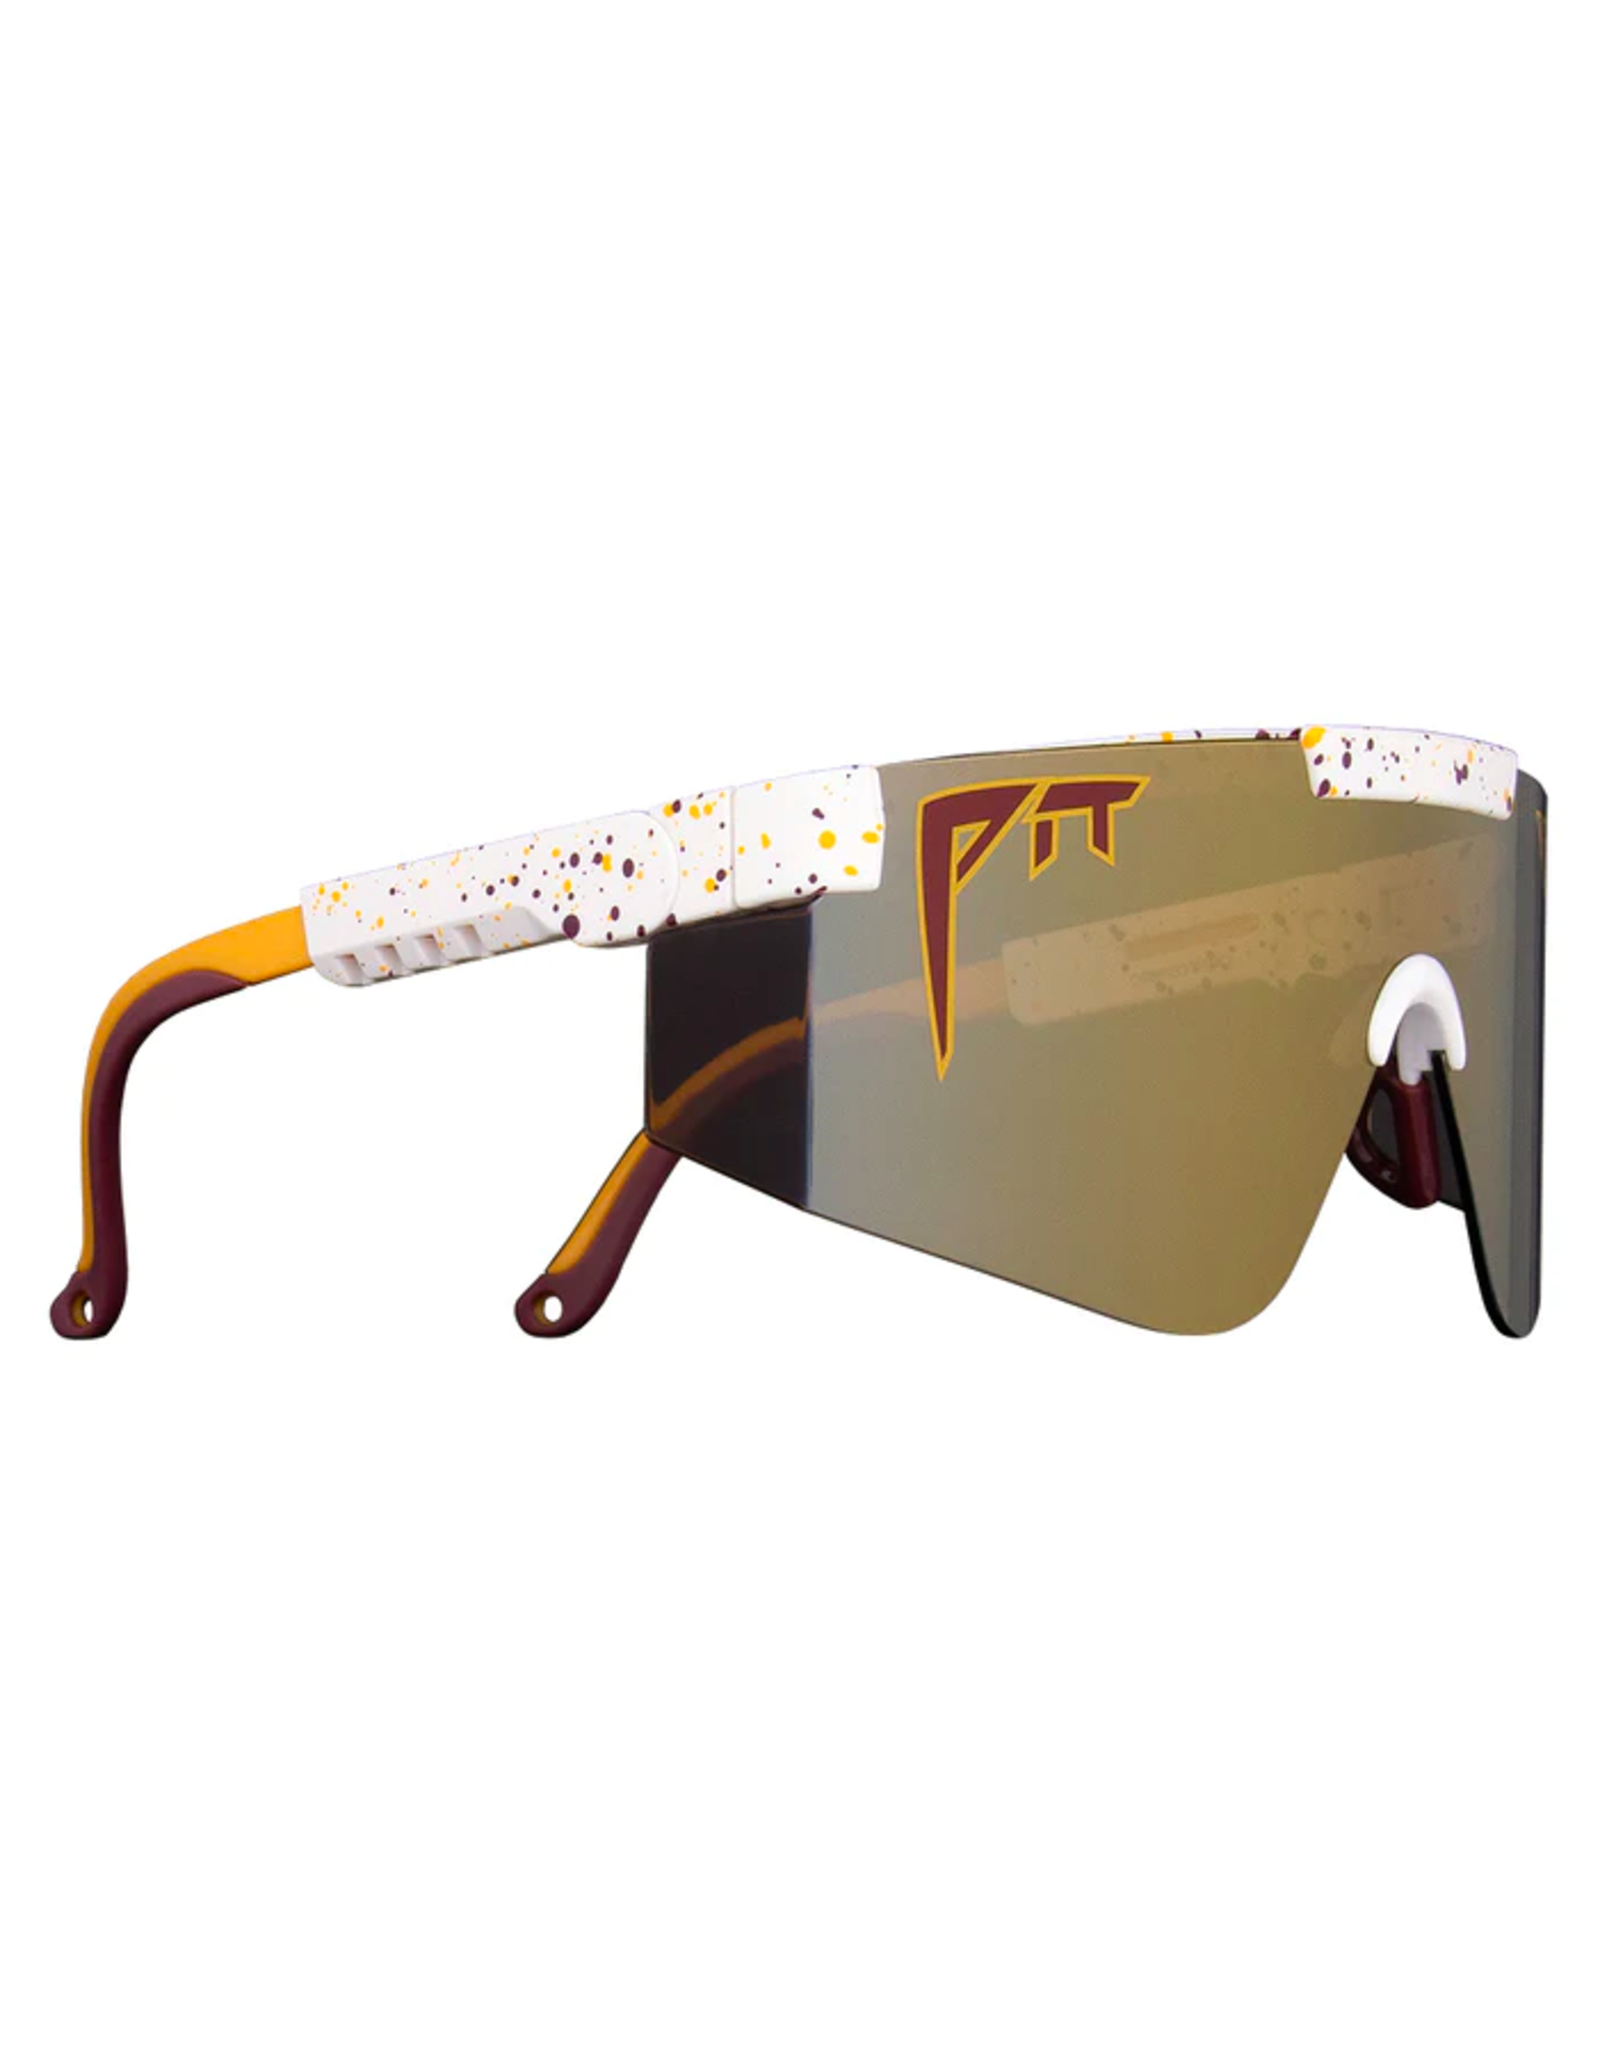 PIT VIPER Pit Viper The District 2000s Sunglasses